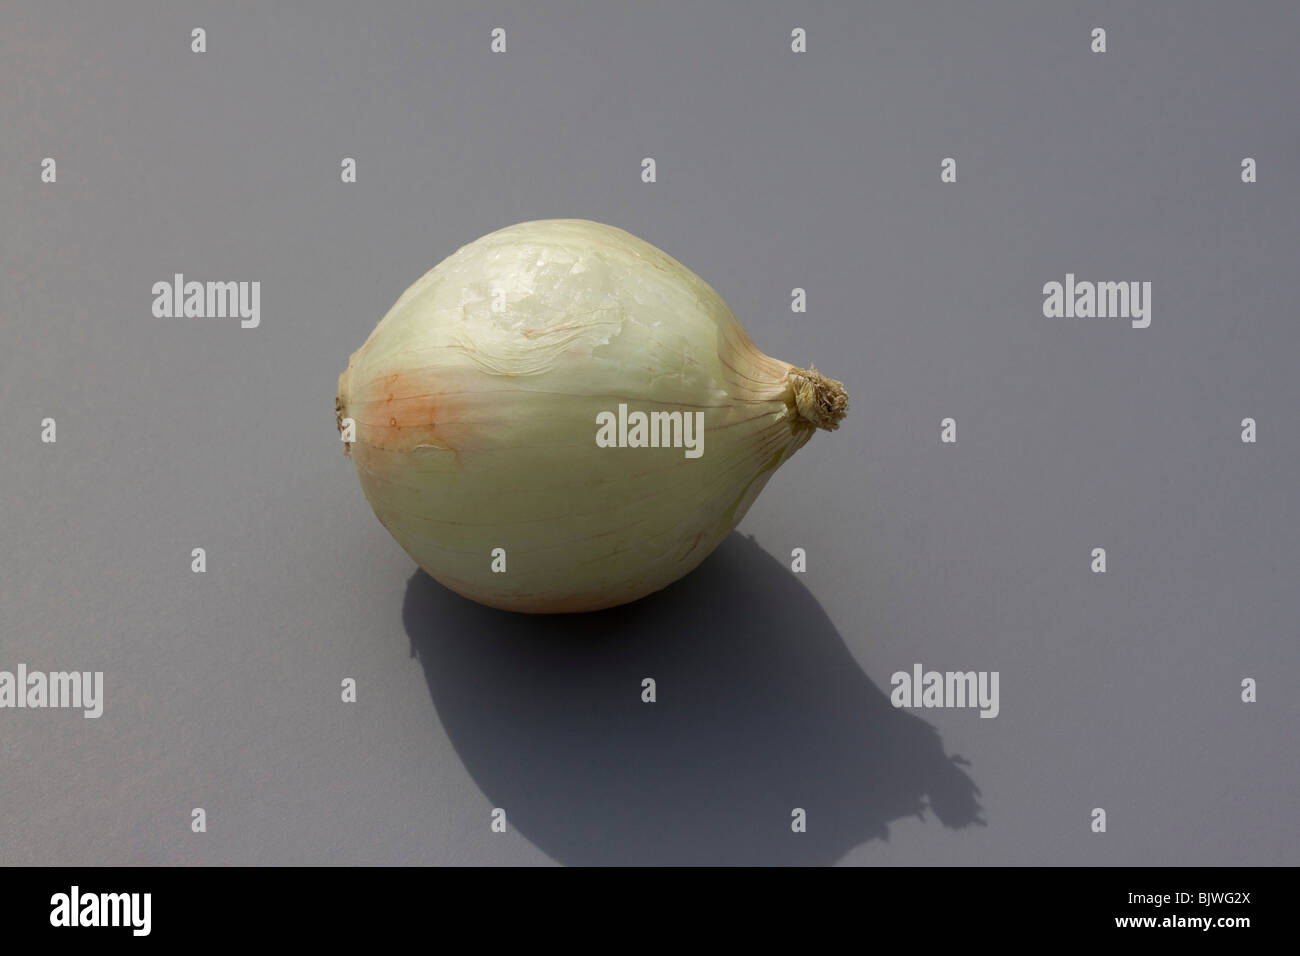 Weiße Zwiebel, durch Dembinsky Foto Assoc Stockfoto